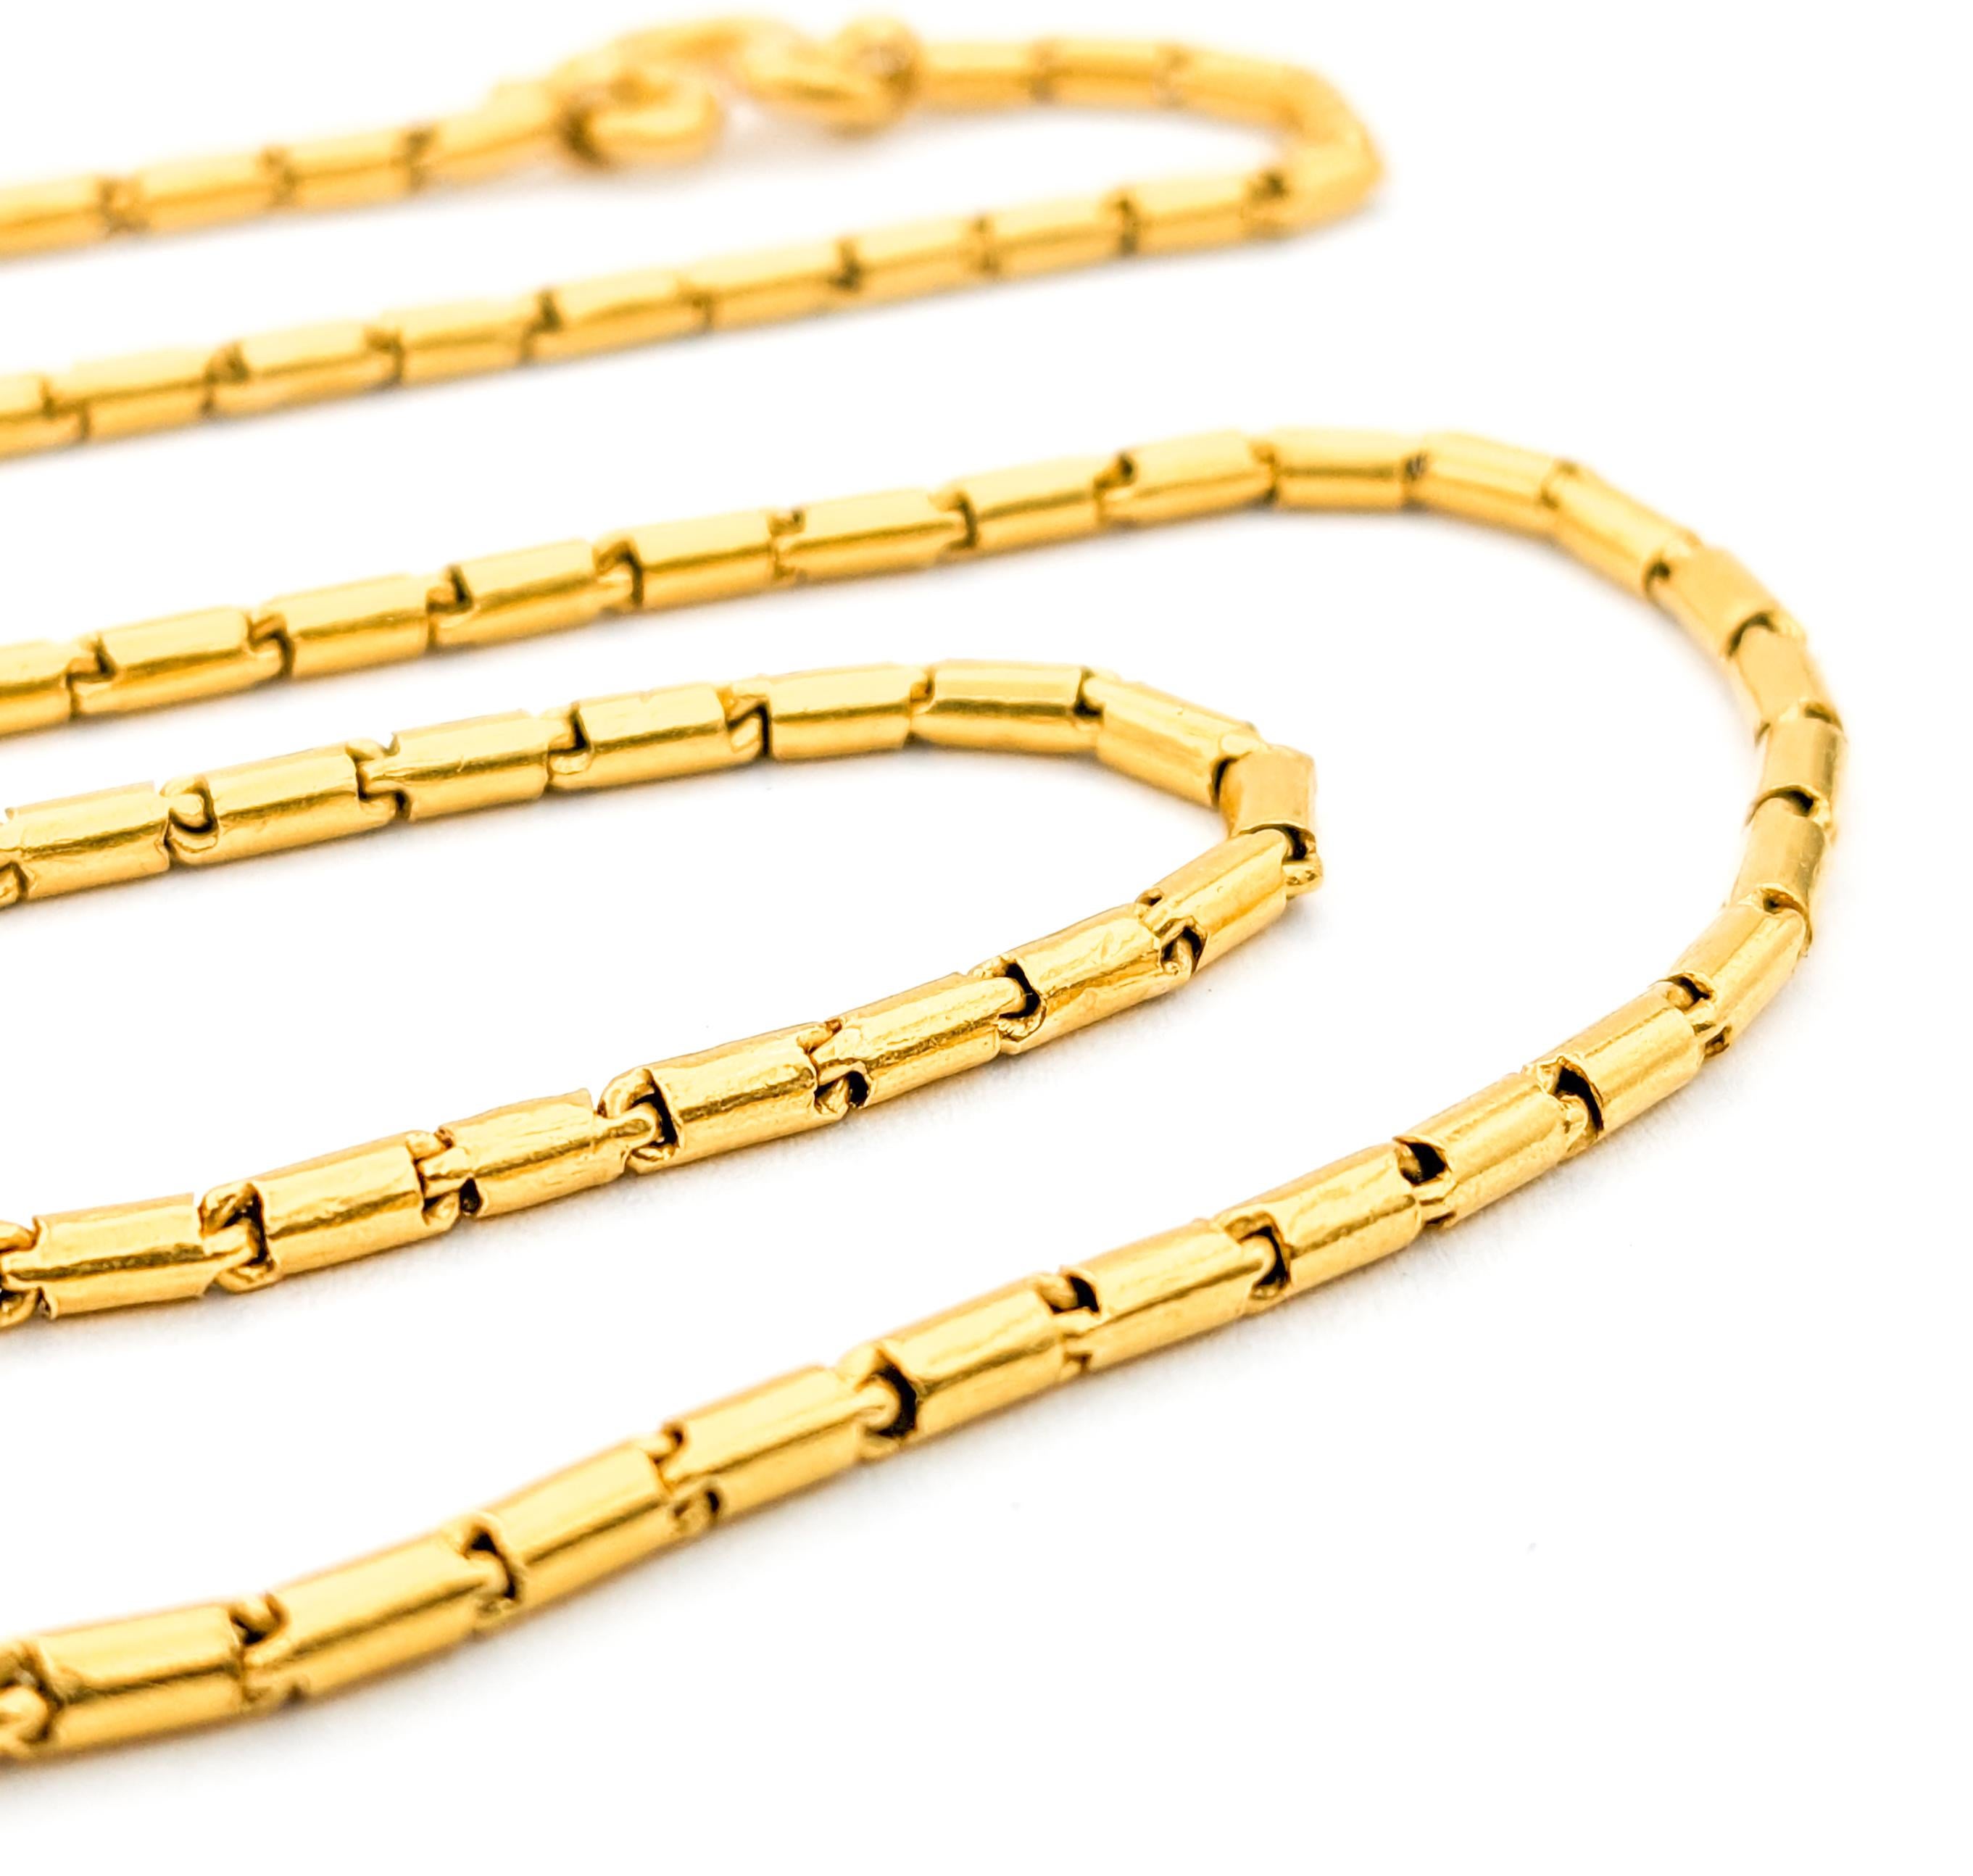 Vintage Barrel Gliederkette Halskette aus 21 Karat Gelbgold

Wir stellen Ihnen unsere exquisite Halskette aus luxuriösem 21-karätigem Gelbgold vor, die mit größter Sorgfalt gefertigt wurde. Dieses atemberaubende Stück zeigt ein einzigartiges Barrel